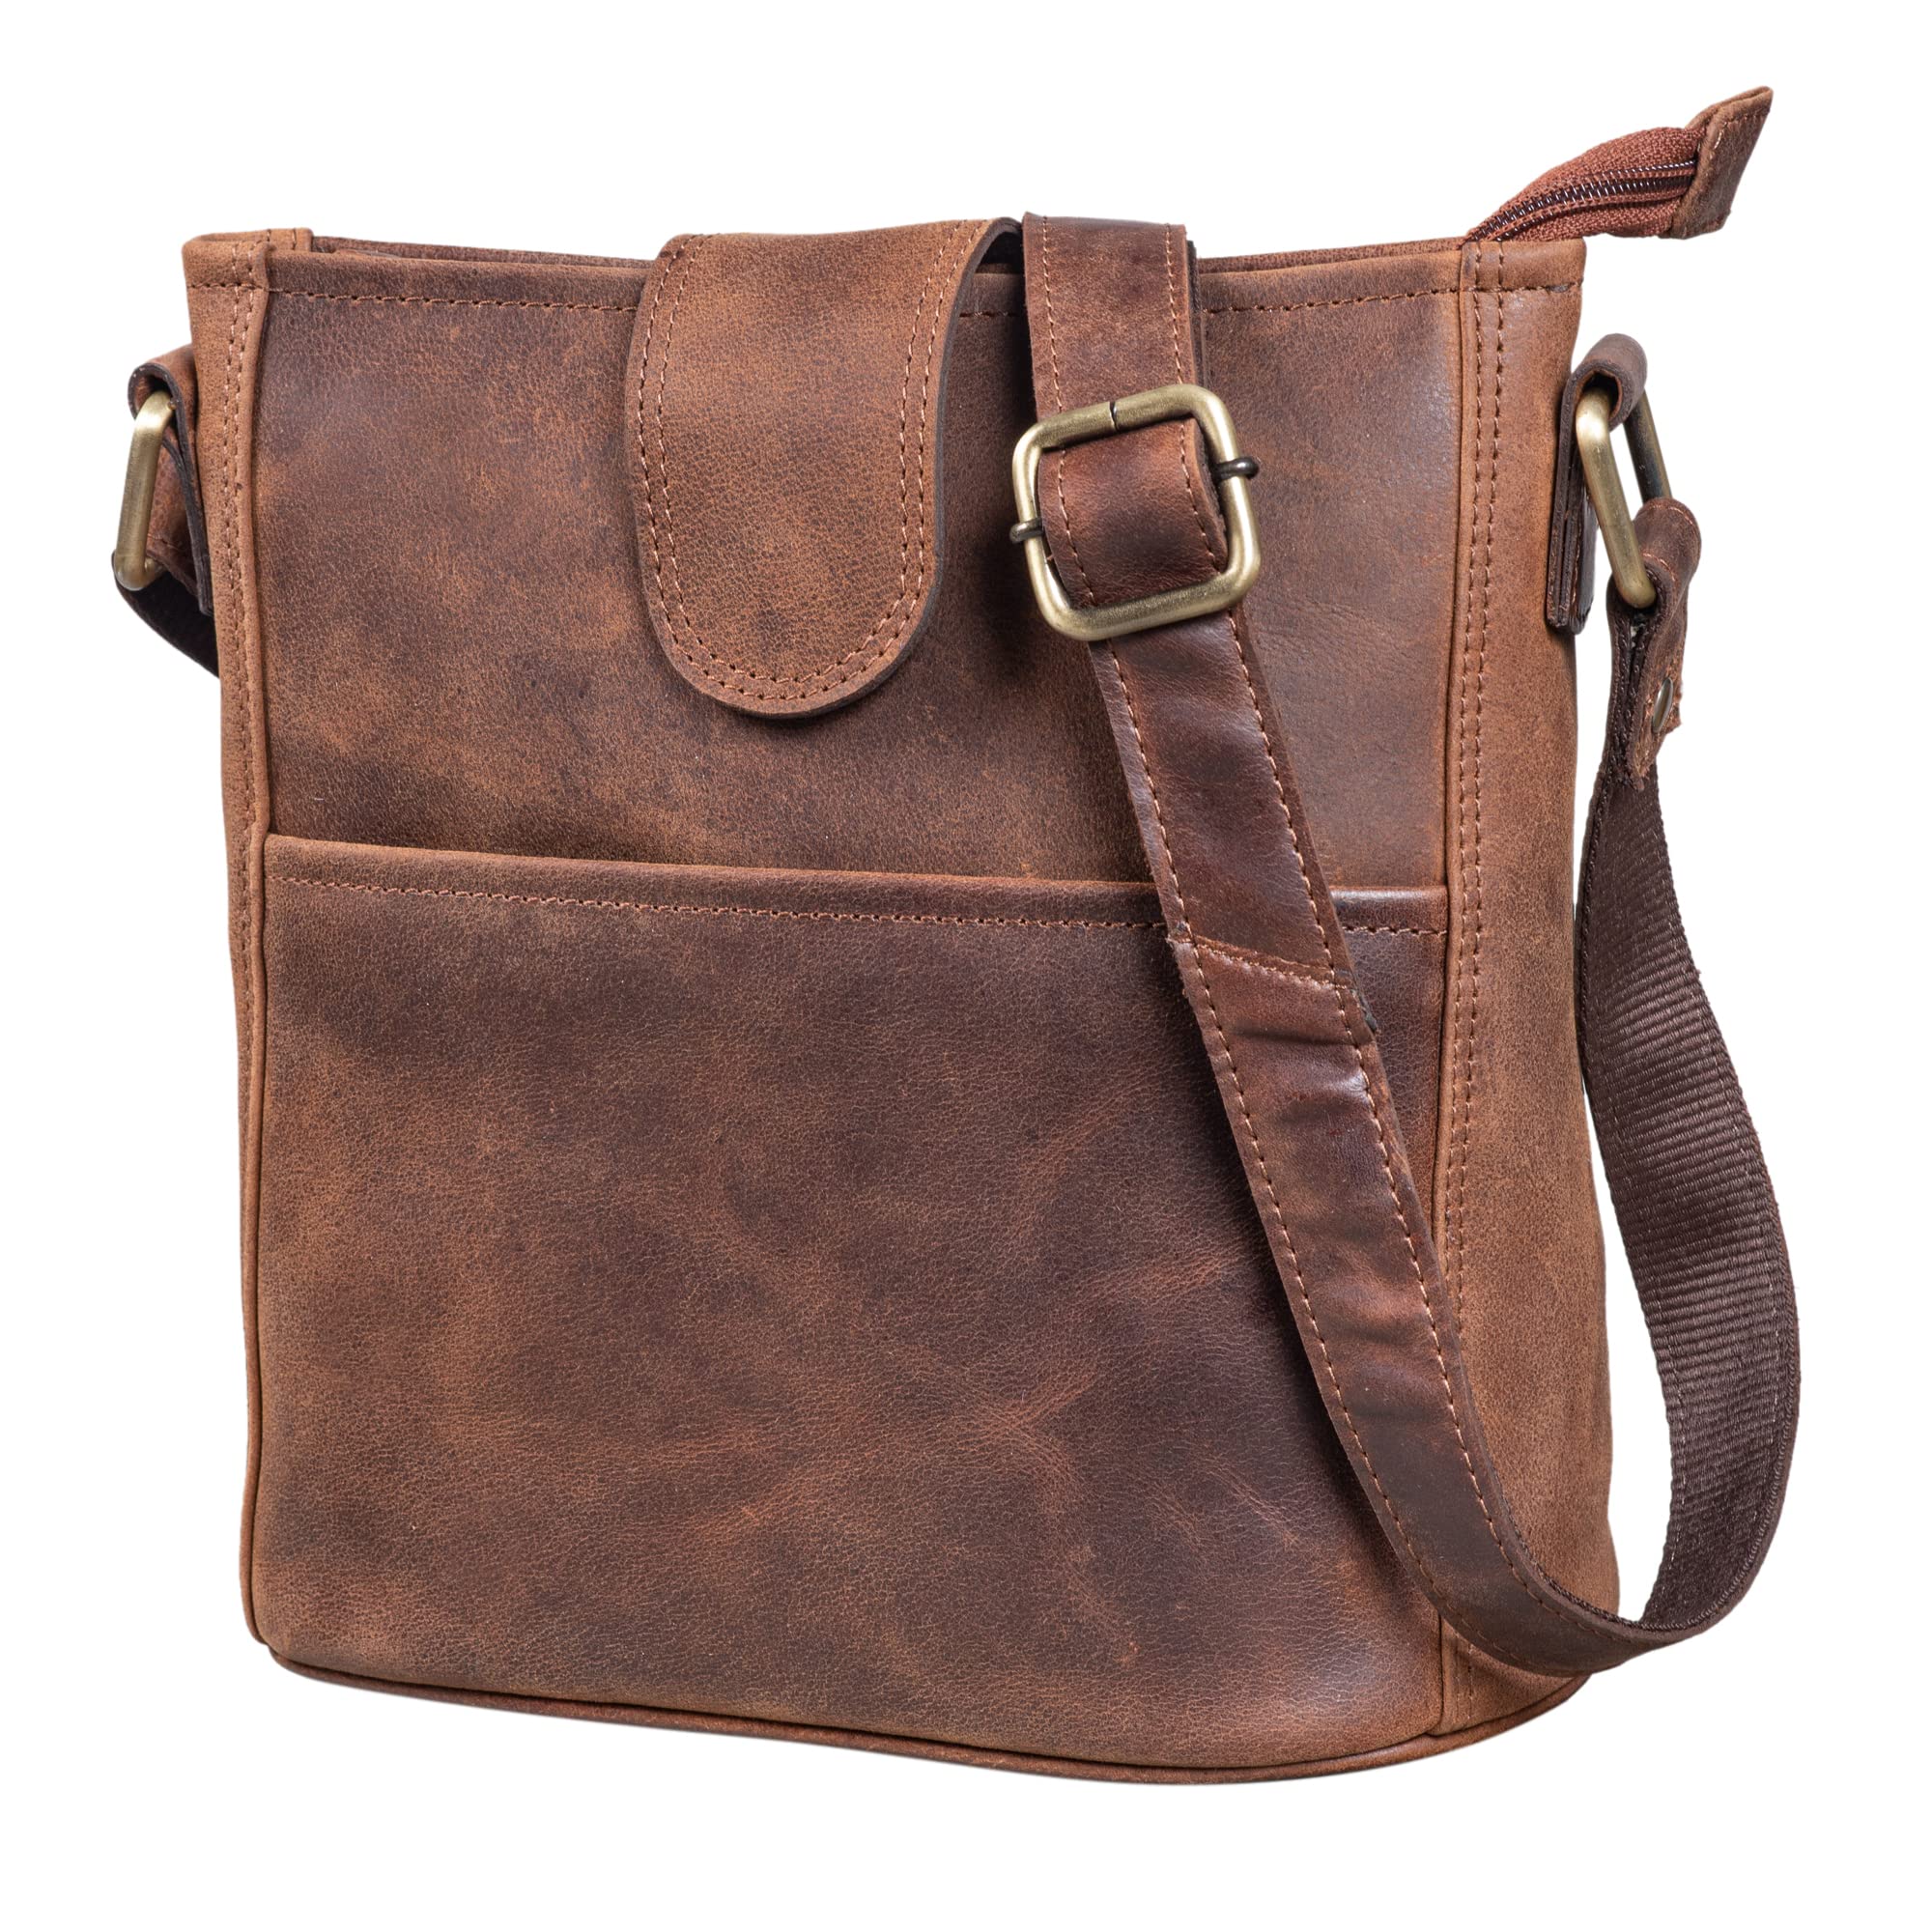 LEABAGS Athens Shoulder Bag I Genuine Leather I Ladies Handbag I Vintage Look I Shoulder Bag I Shopper I Multi Bag